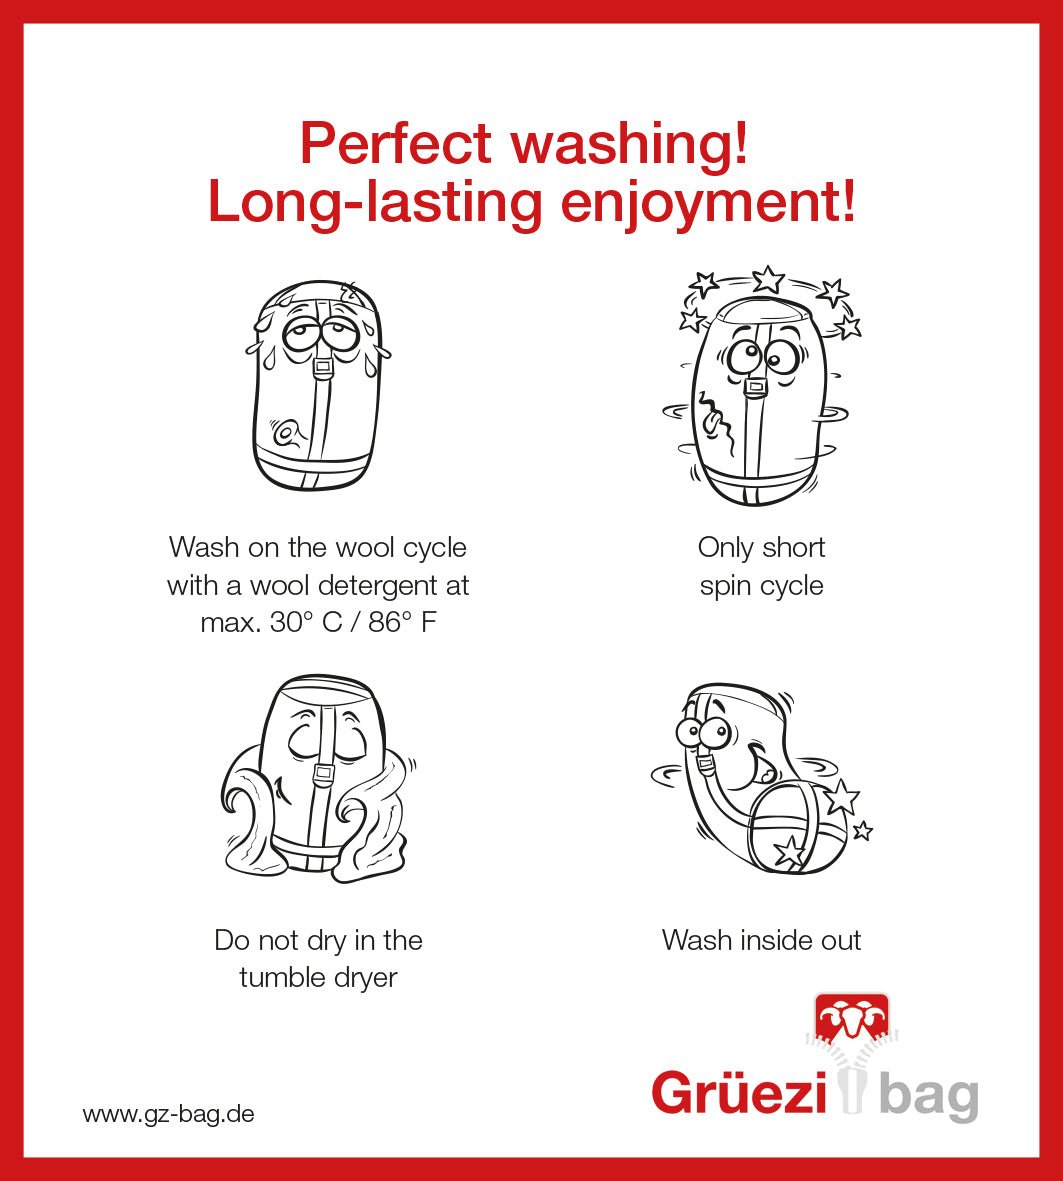 Grüezi bag Wollschlafsack Biopod Wolle Goas Comfort - Washing instructions english